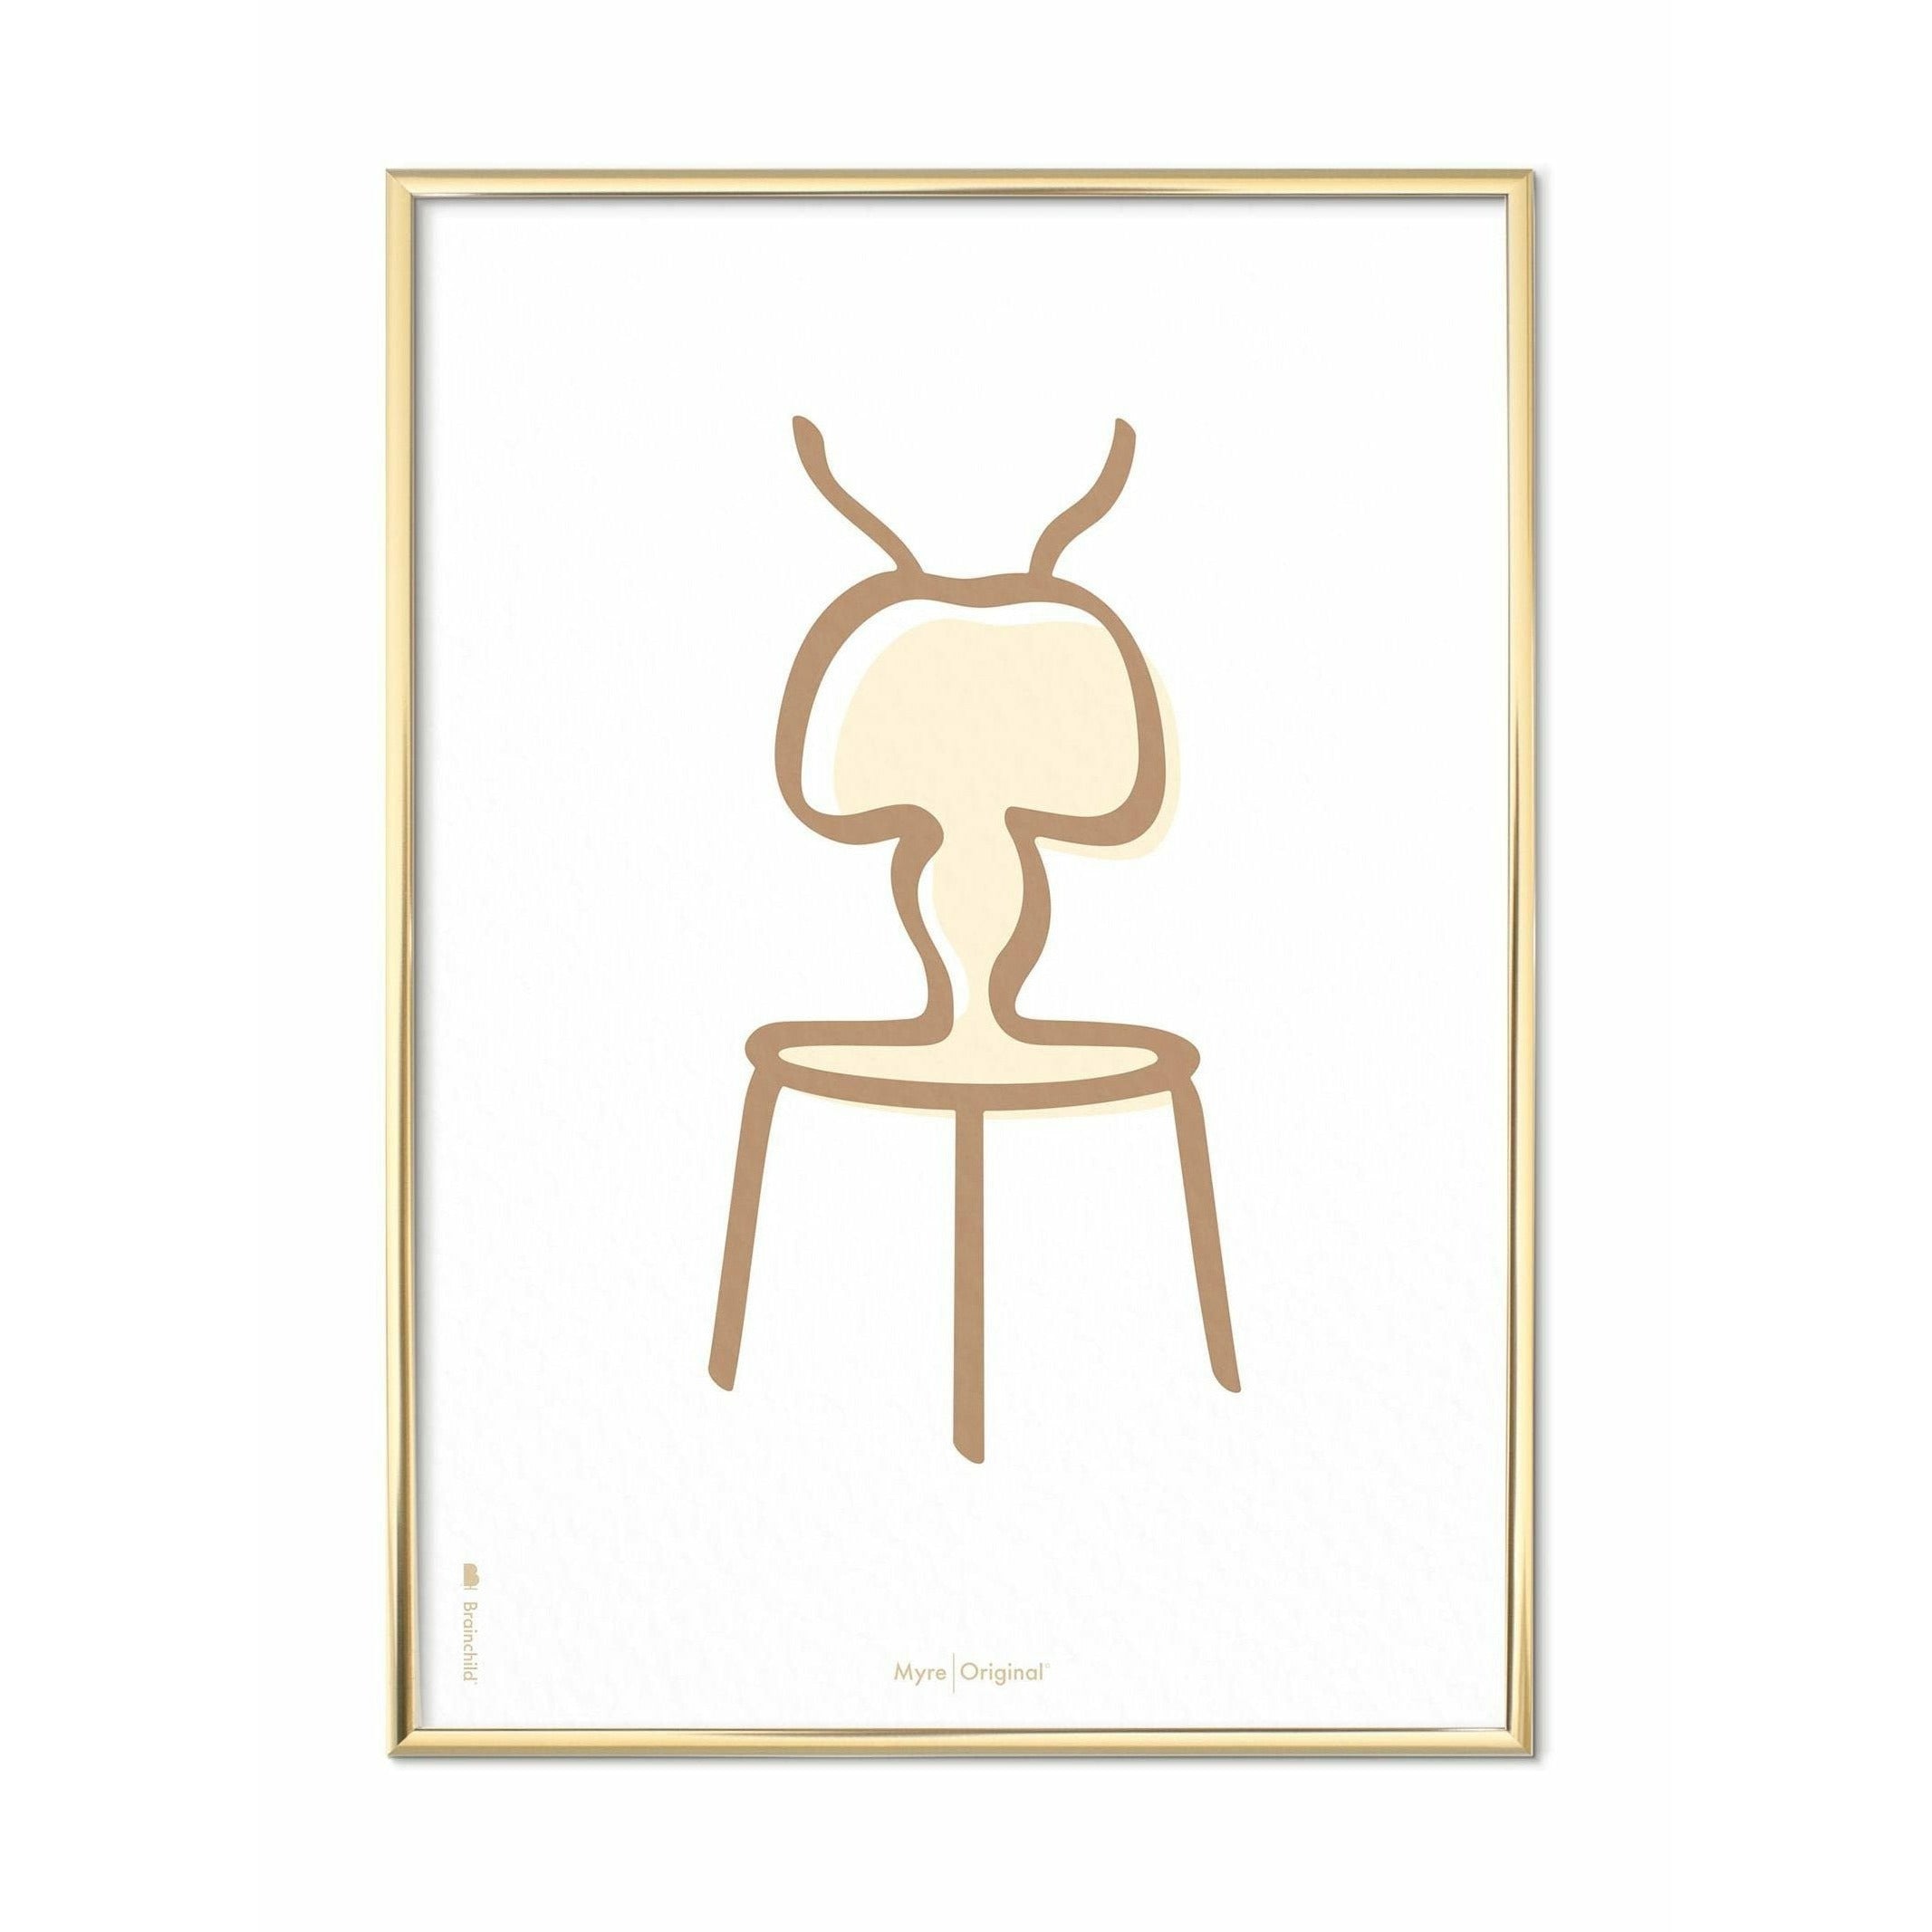 Plakát Ant Line Brainchild, mosazný barevný rám A5, bílé pozadí